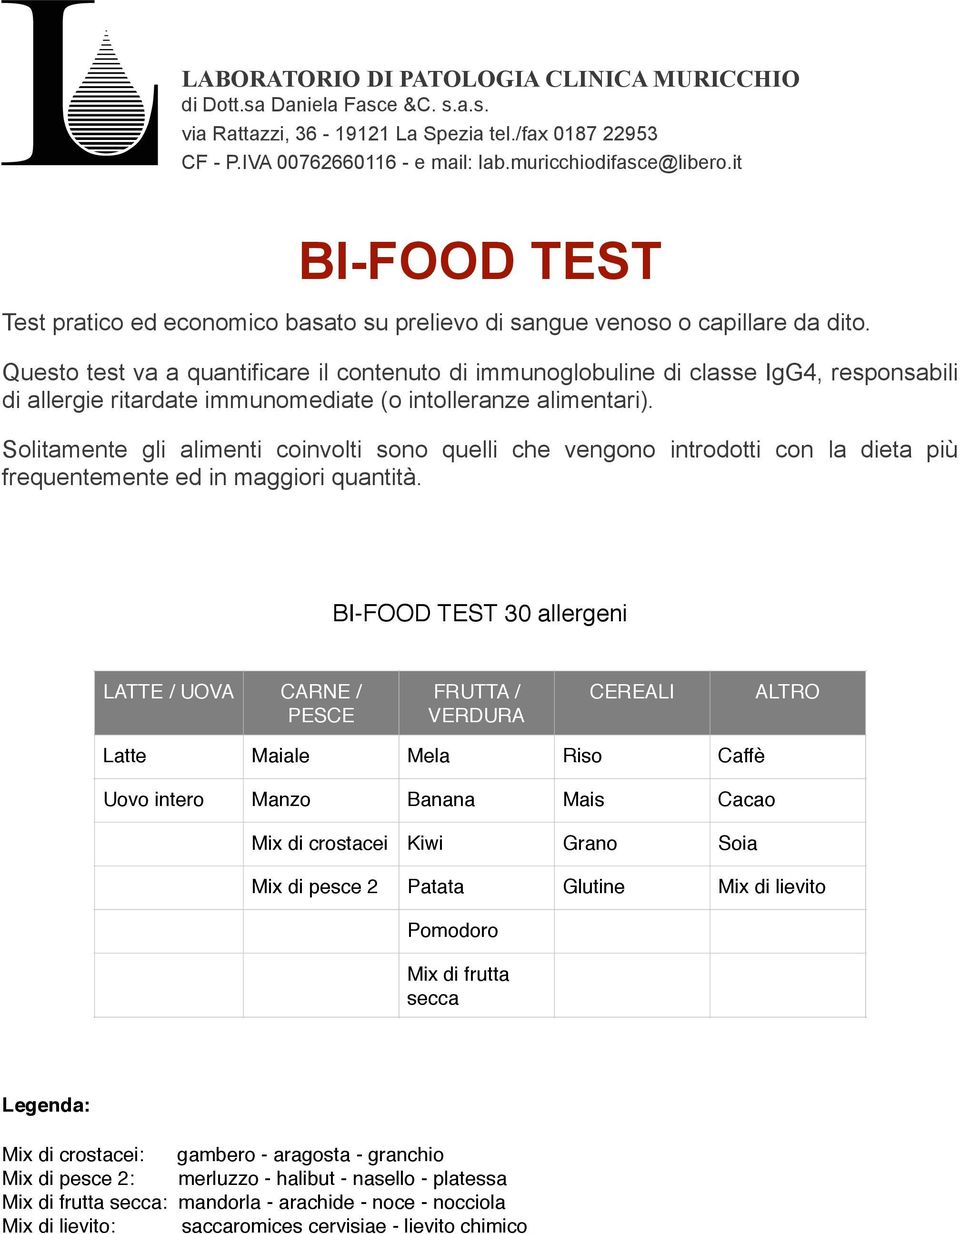 Questo test va a quantificare il contenuto di immunoglobuline di classe IgG4, responsabili di allergie ritardate immunomediate (o intolleranze alimentari).